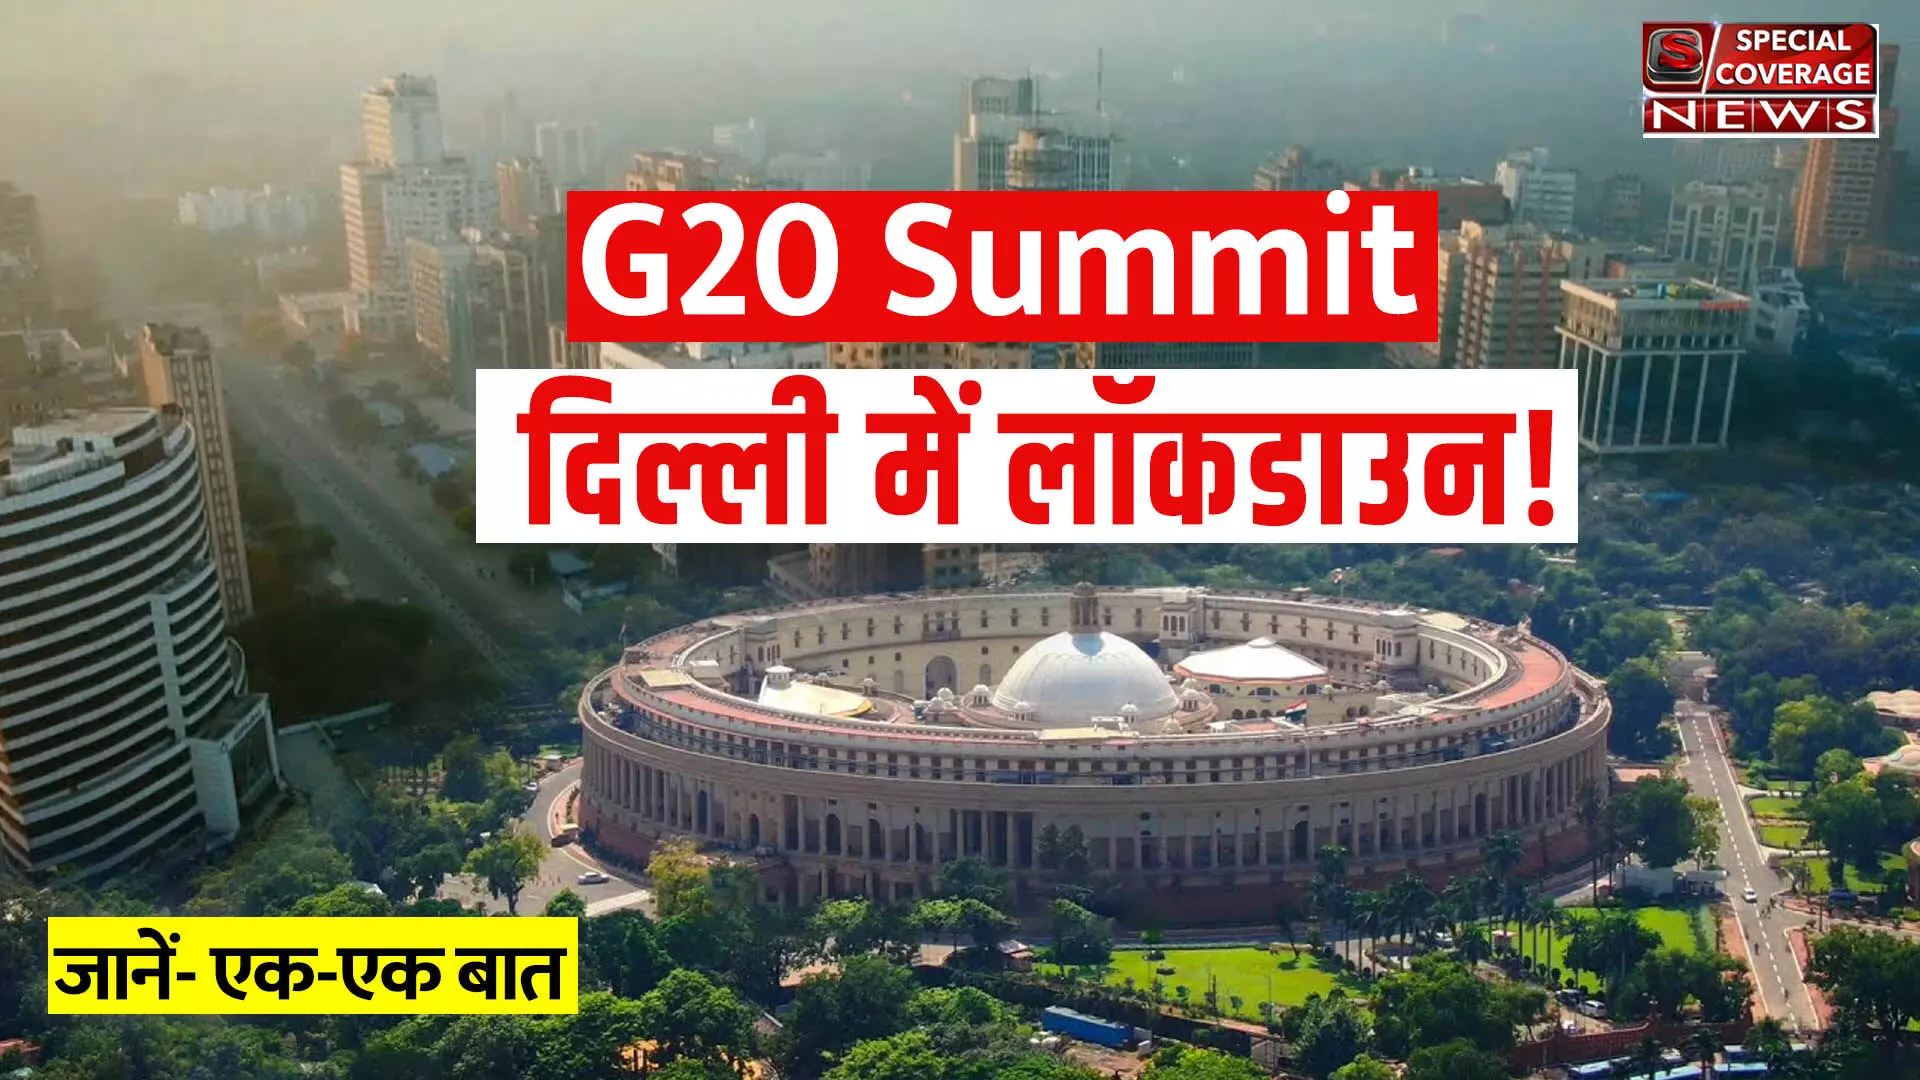 G20 SUMMIT : दिल्ली में इन तीन दिन का रहेगा लॉकडाउन! जानिए- क्या रहेंगे नियम!